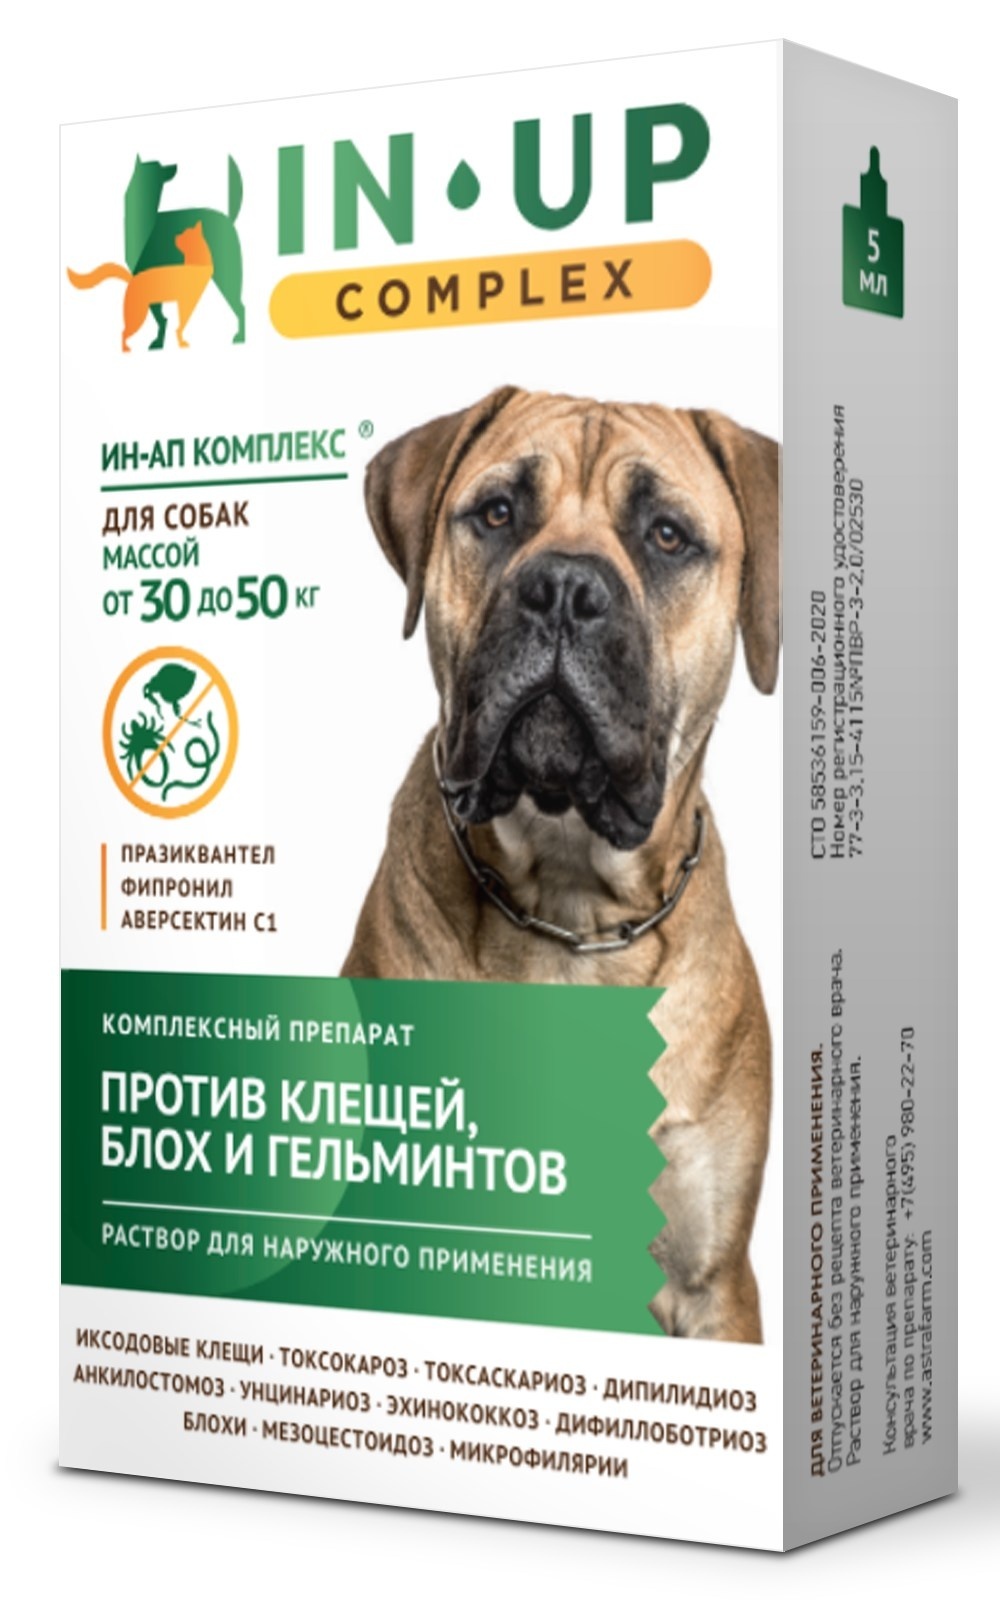 Астрафарм Астрафарм иН-АП комплекс для собак массой от 30 до 50 кг против блох, клещей, вшей, власоедов и гельминтов (25 г)